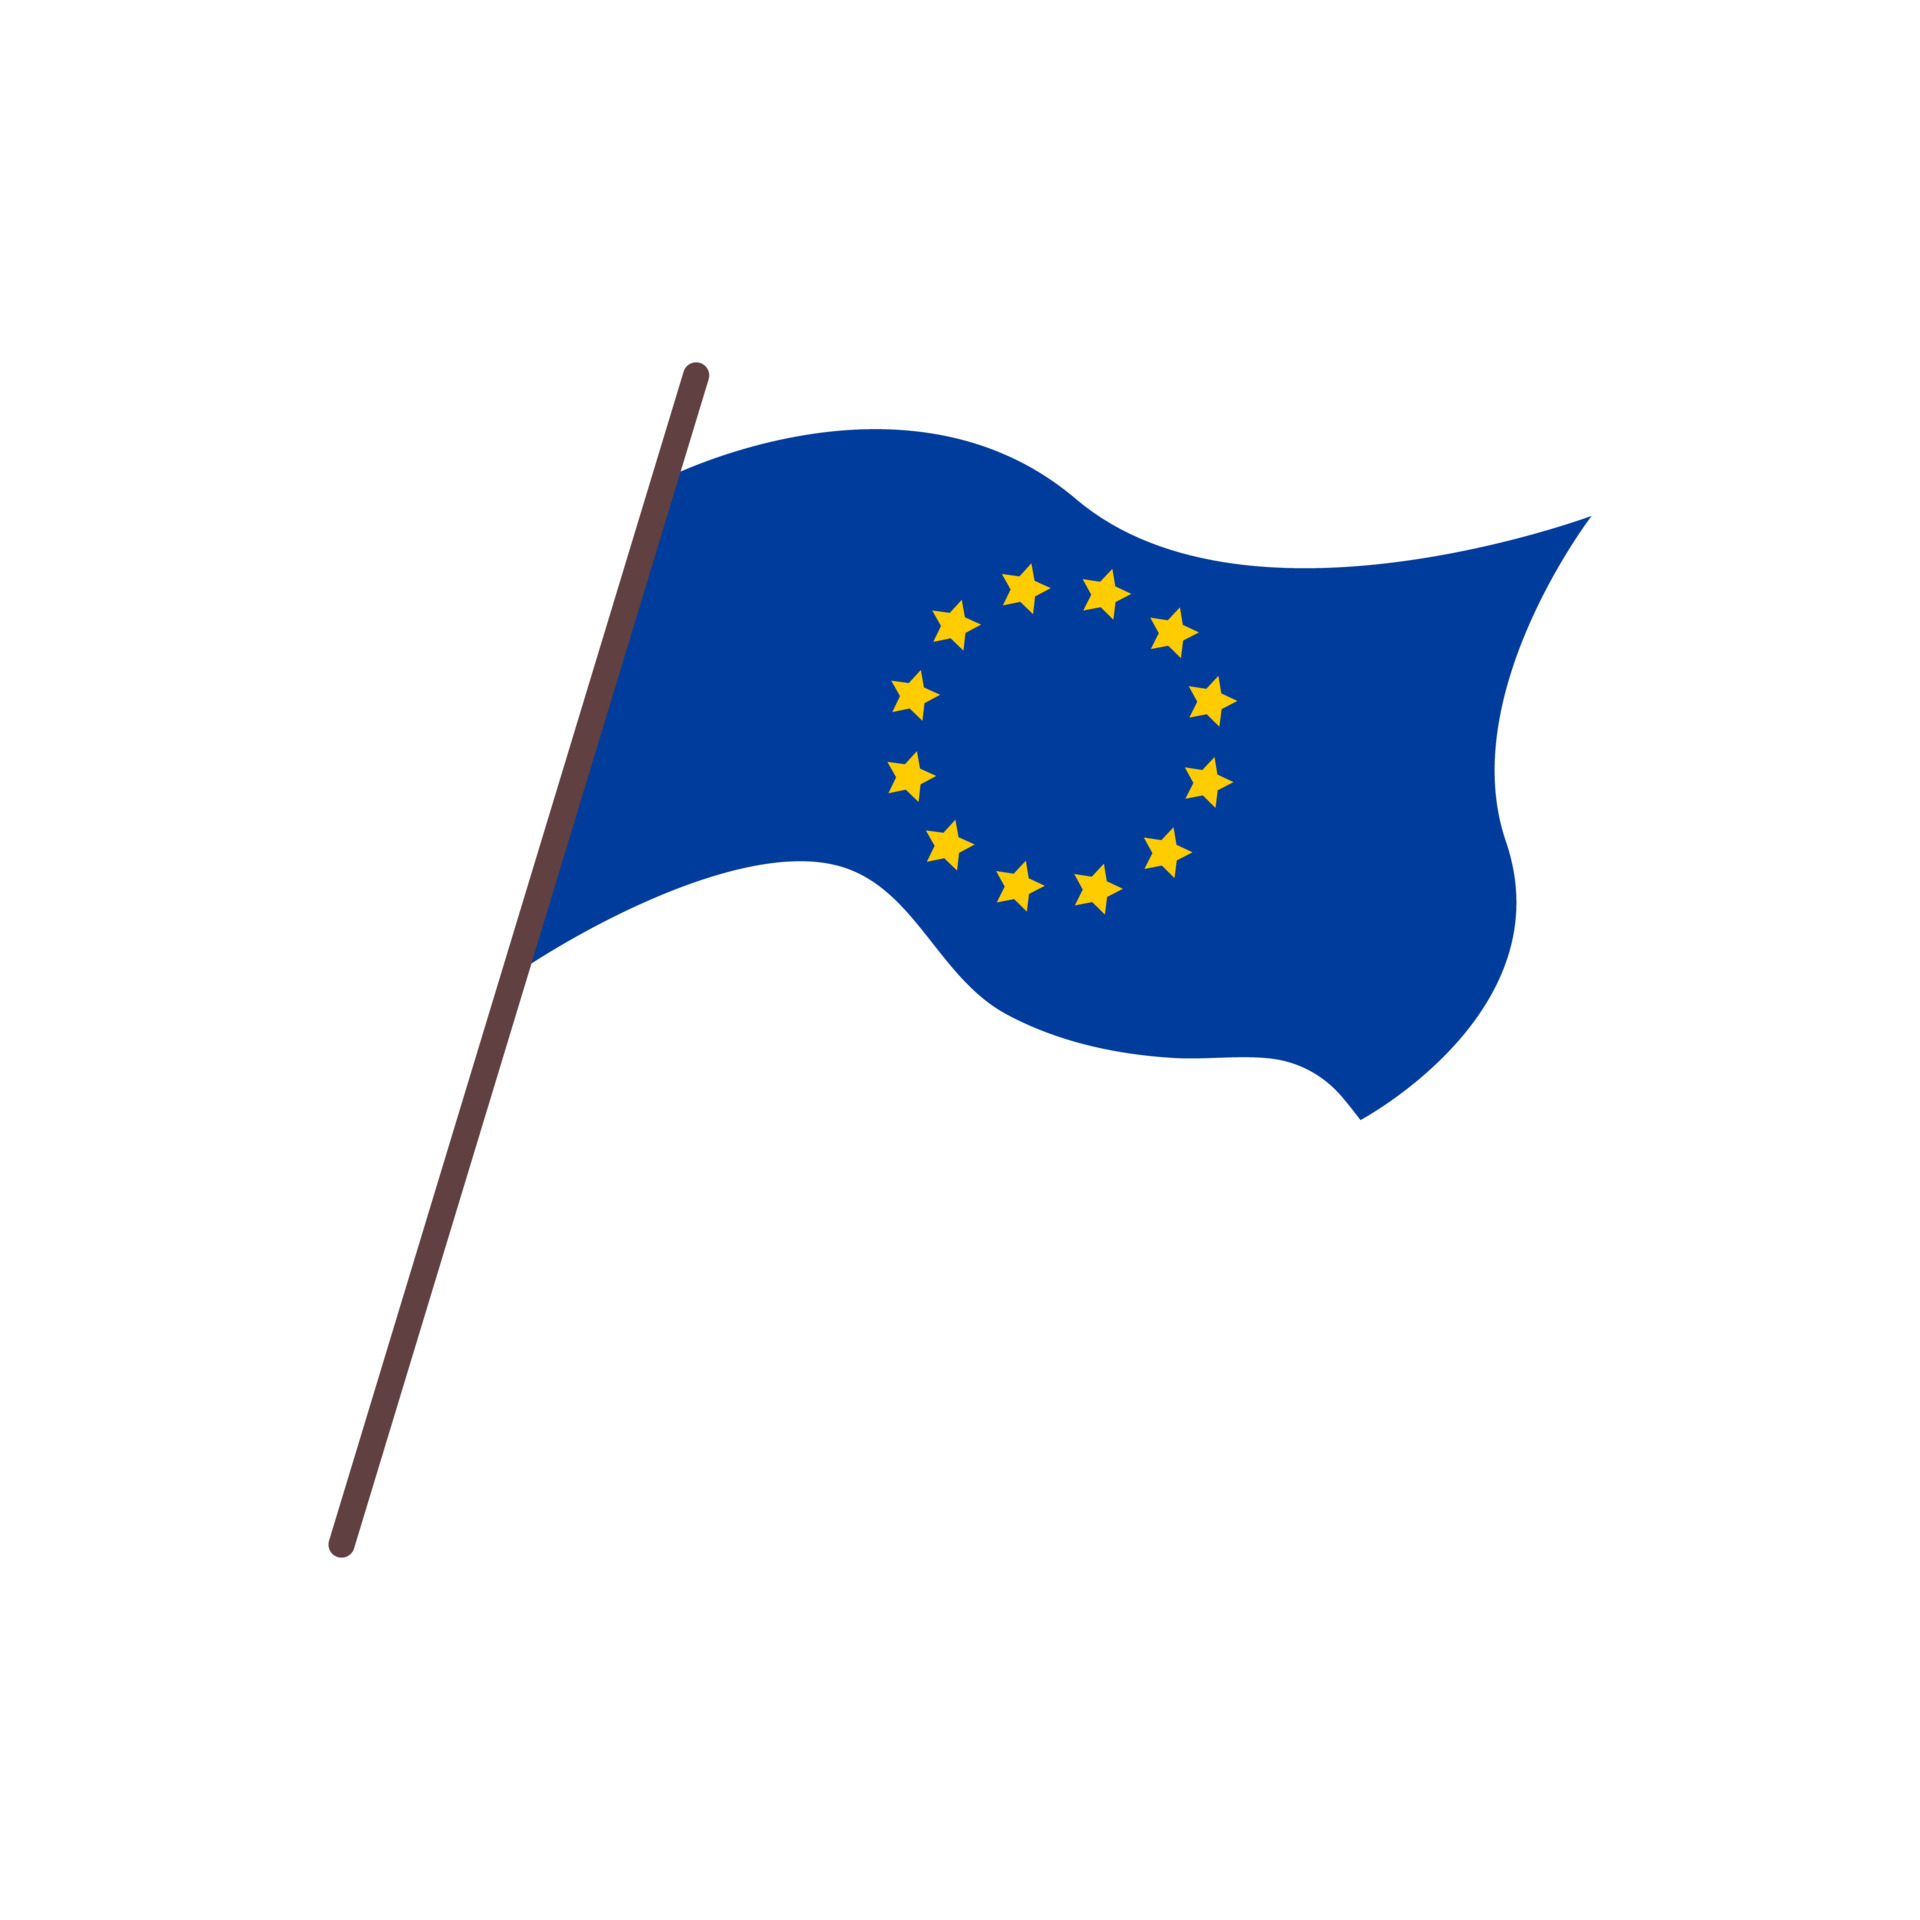 https://static.vecteezy.com/ti/gratis-vektor/p3/6326875-flagge-der-europaischen-union-isolierteflache-illustration-der-wehenden-flagge-der-eu-12-gelbe-sterne-auf-blauem-hintergrund-vektor.jpg